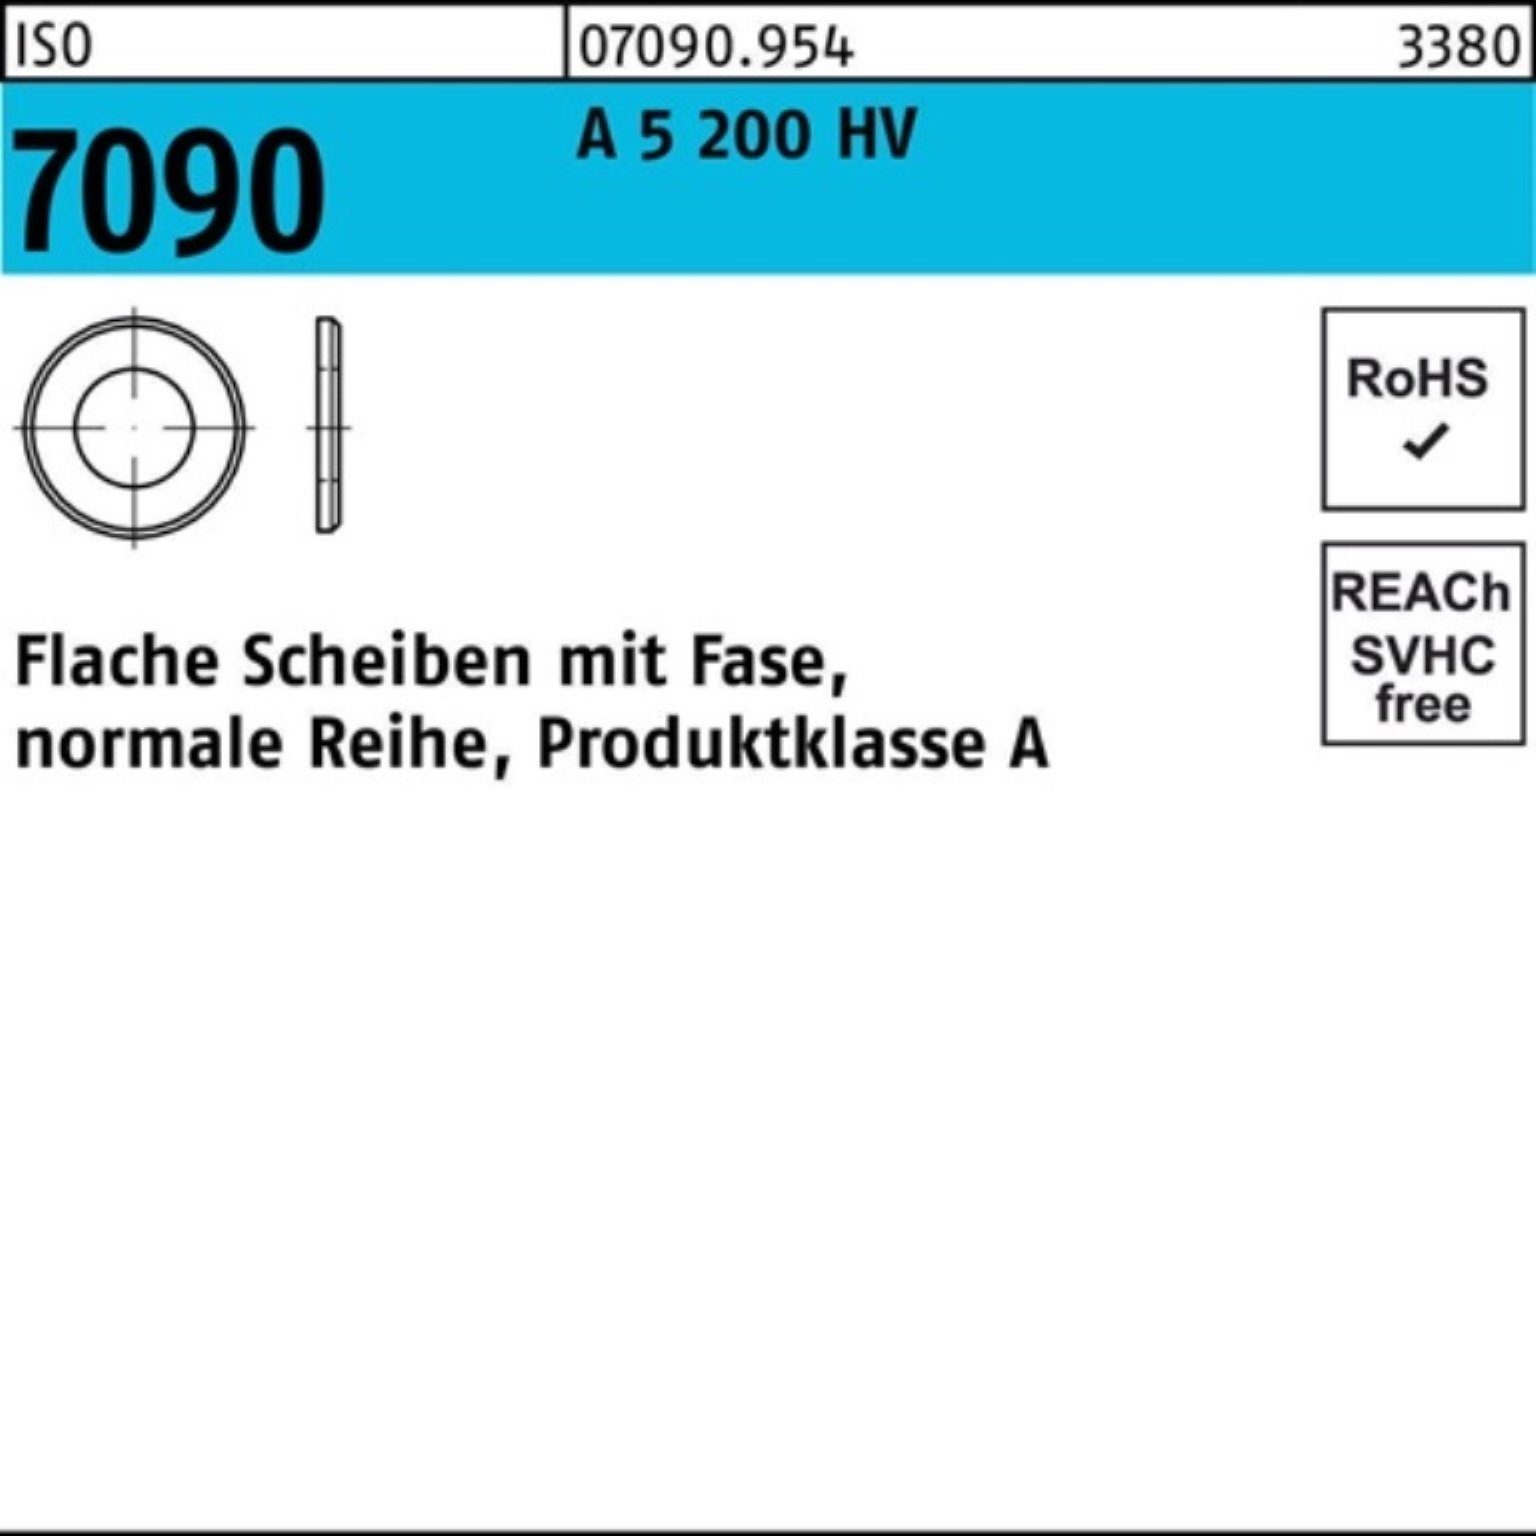 7090 Reyher A Unterlegscheibe (1.4571) 1000 6 HV Fase 200 ISO Unterlegscheibe Pack 5 S 1000er